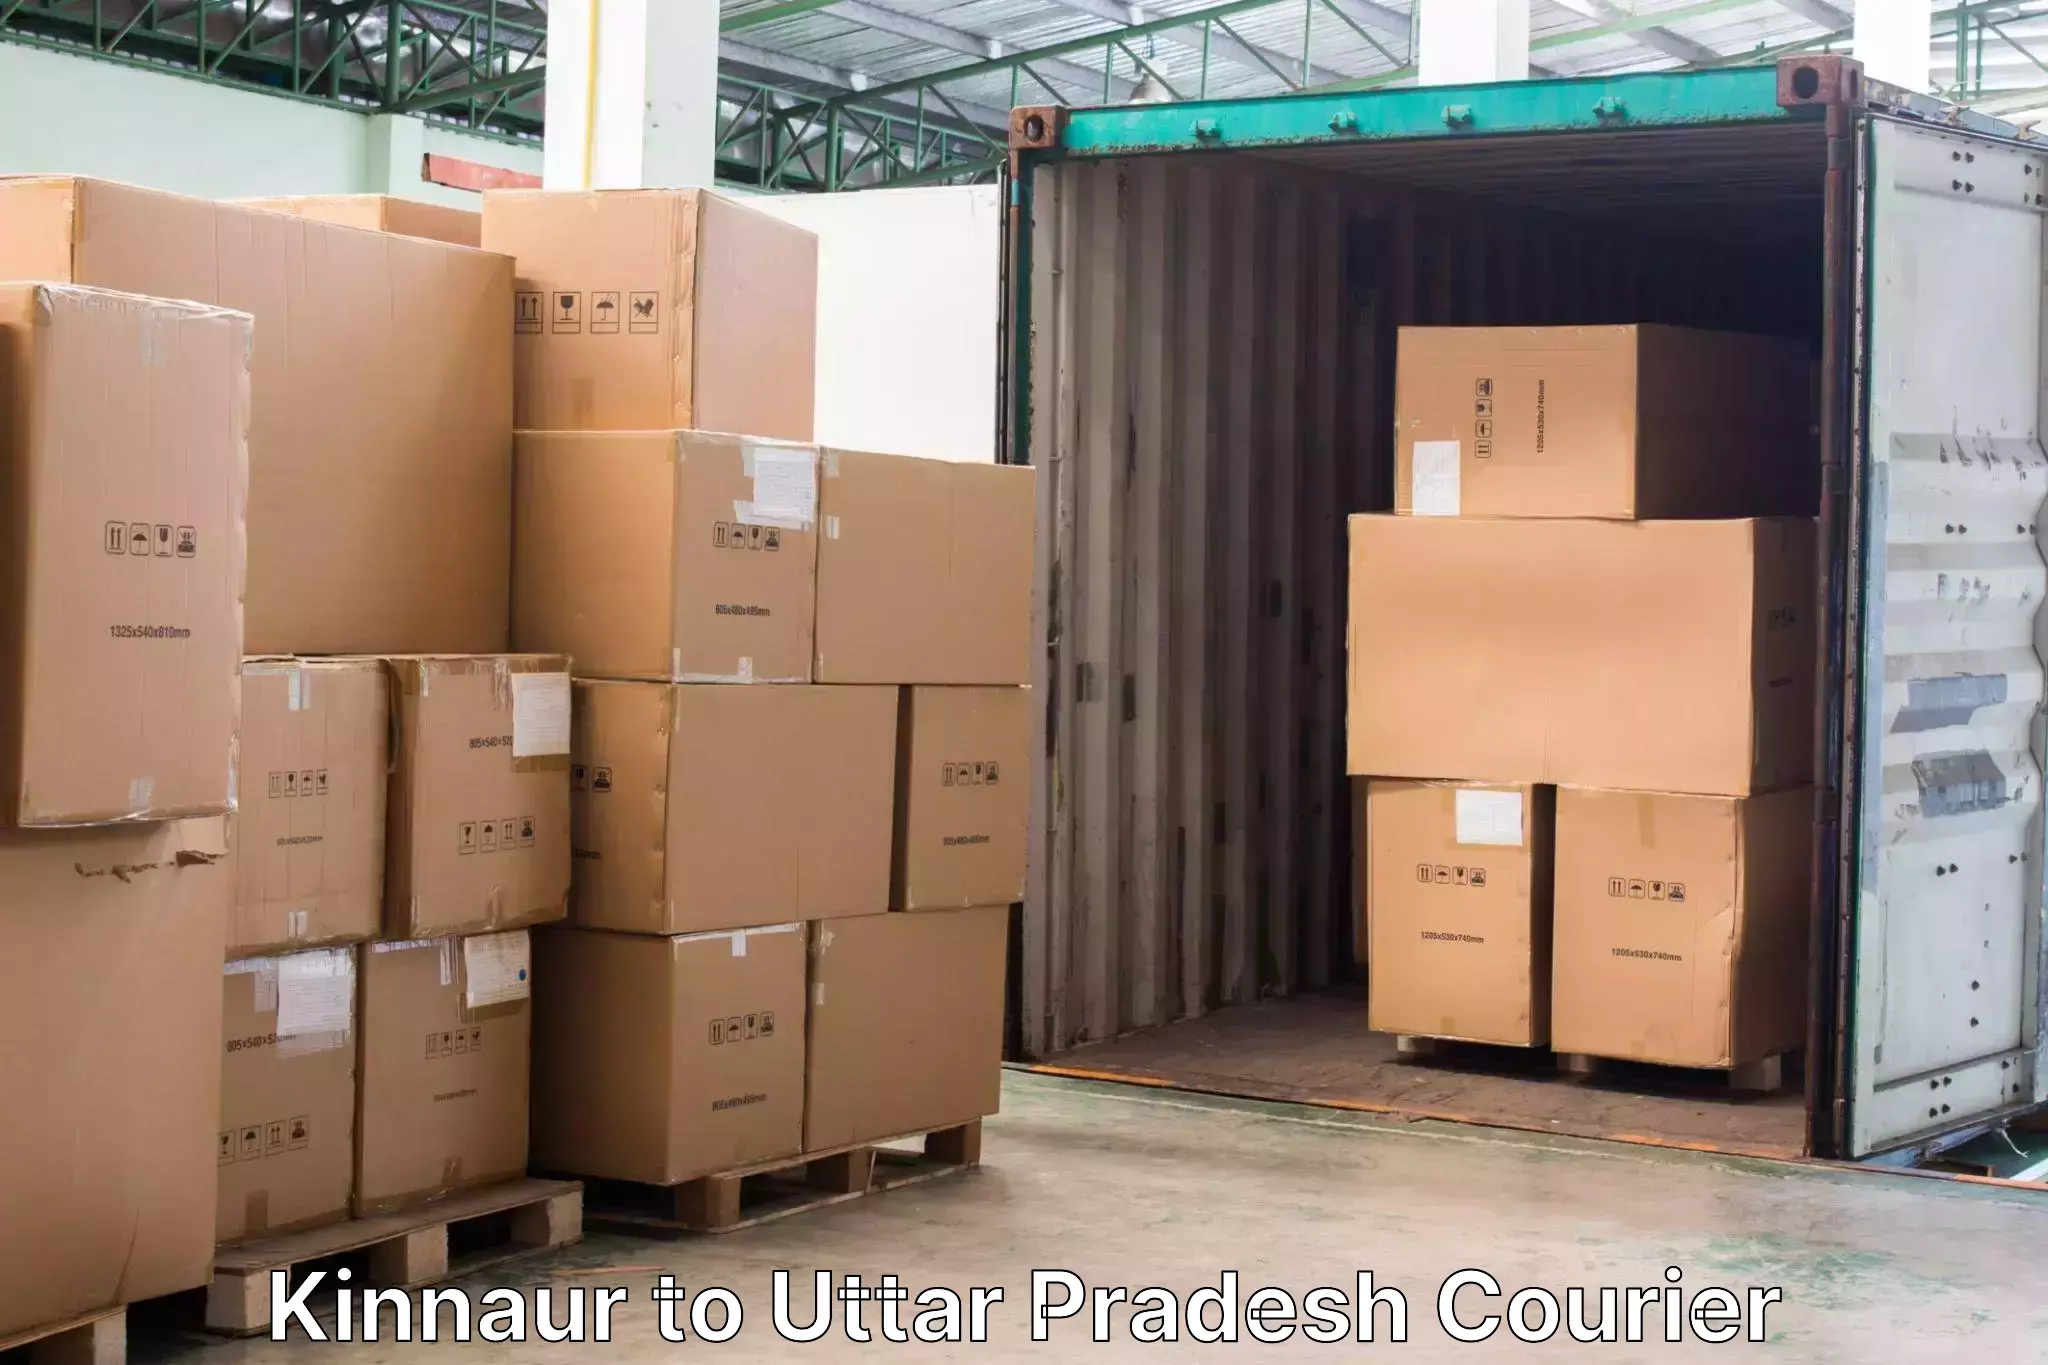 Luggage shipment tracking Kinnaur to Lakhimpur